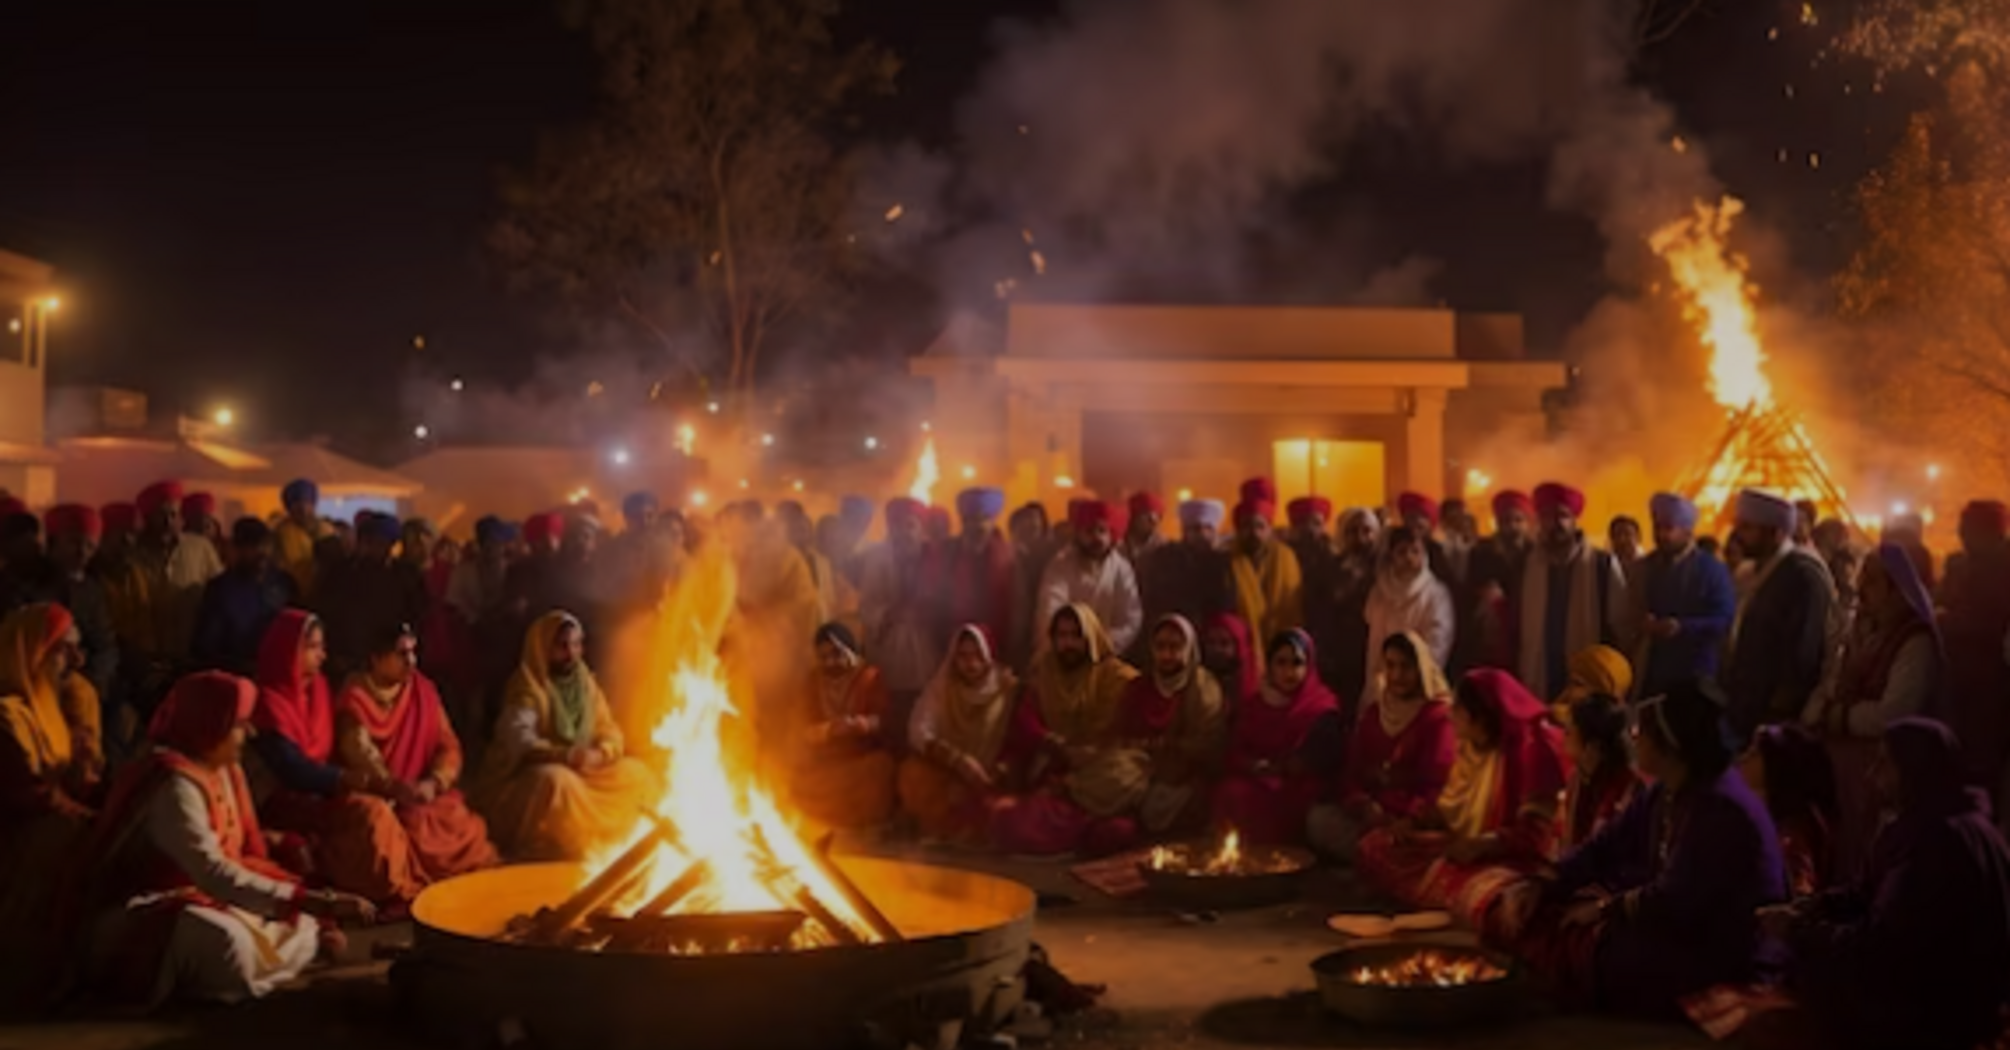 Lohri festival in India